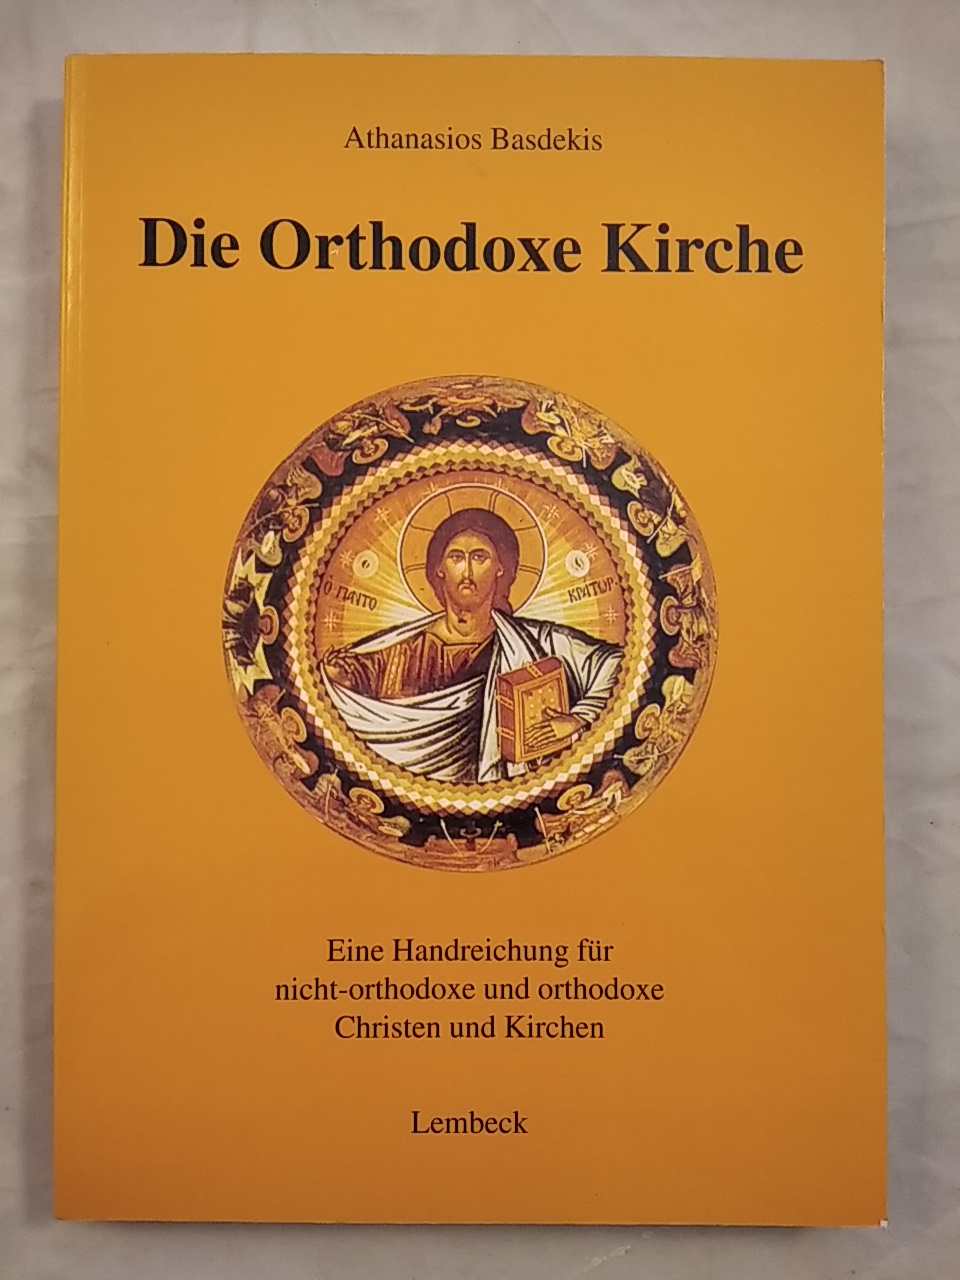 Die Orthodoxe Kirche - Eine Handreichung für nicht-orthodoxe und orthodoxe Christen und Kirchen. - Basdekis, Athanasios